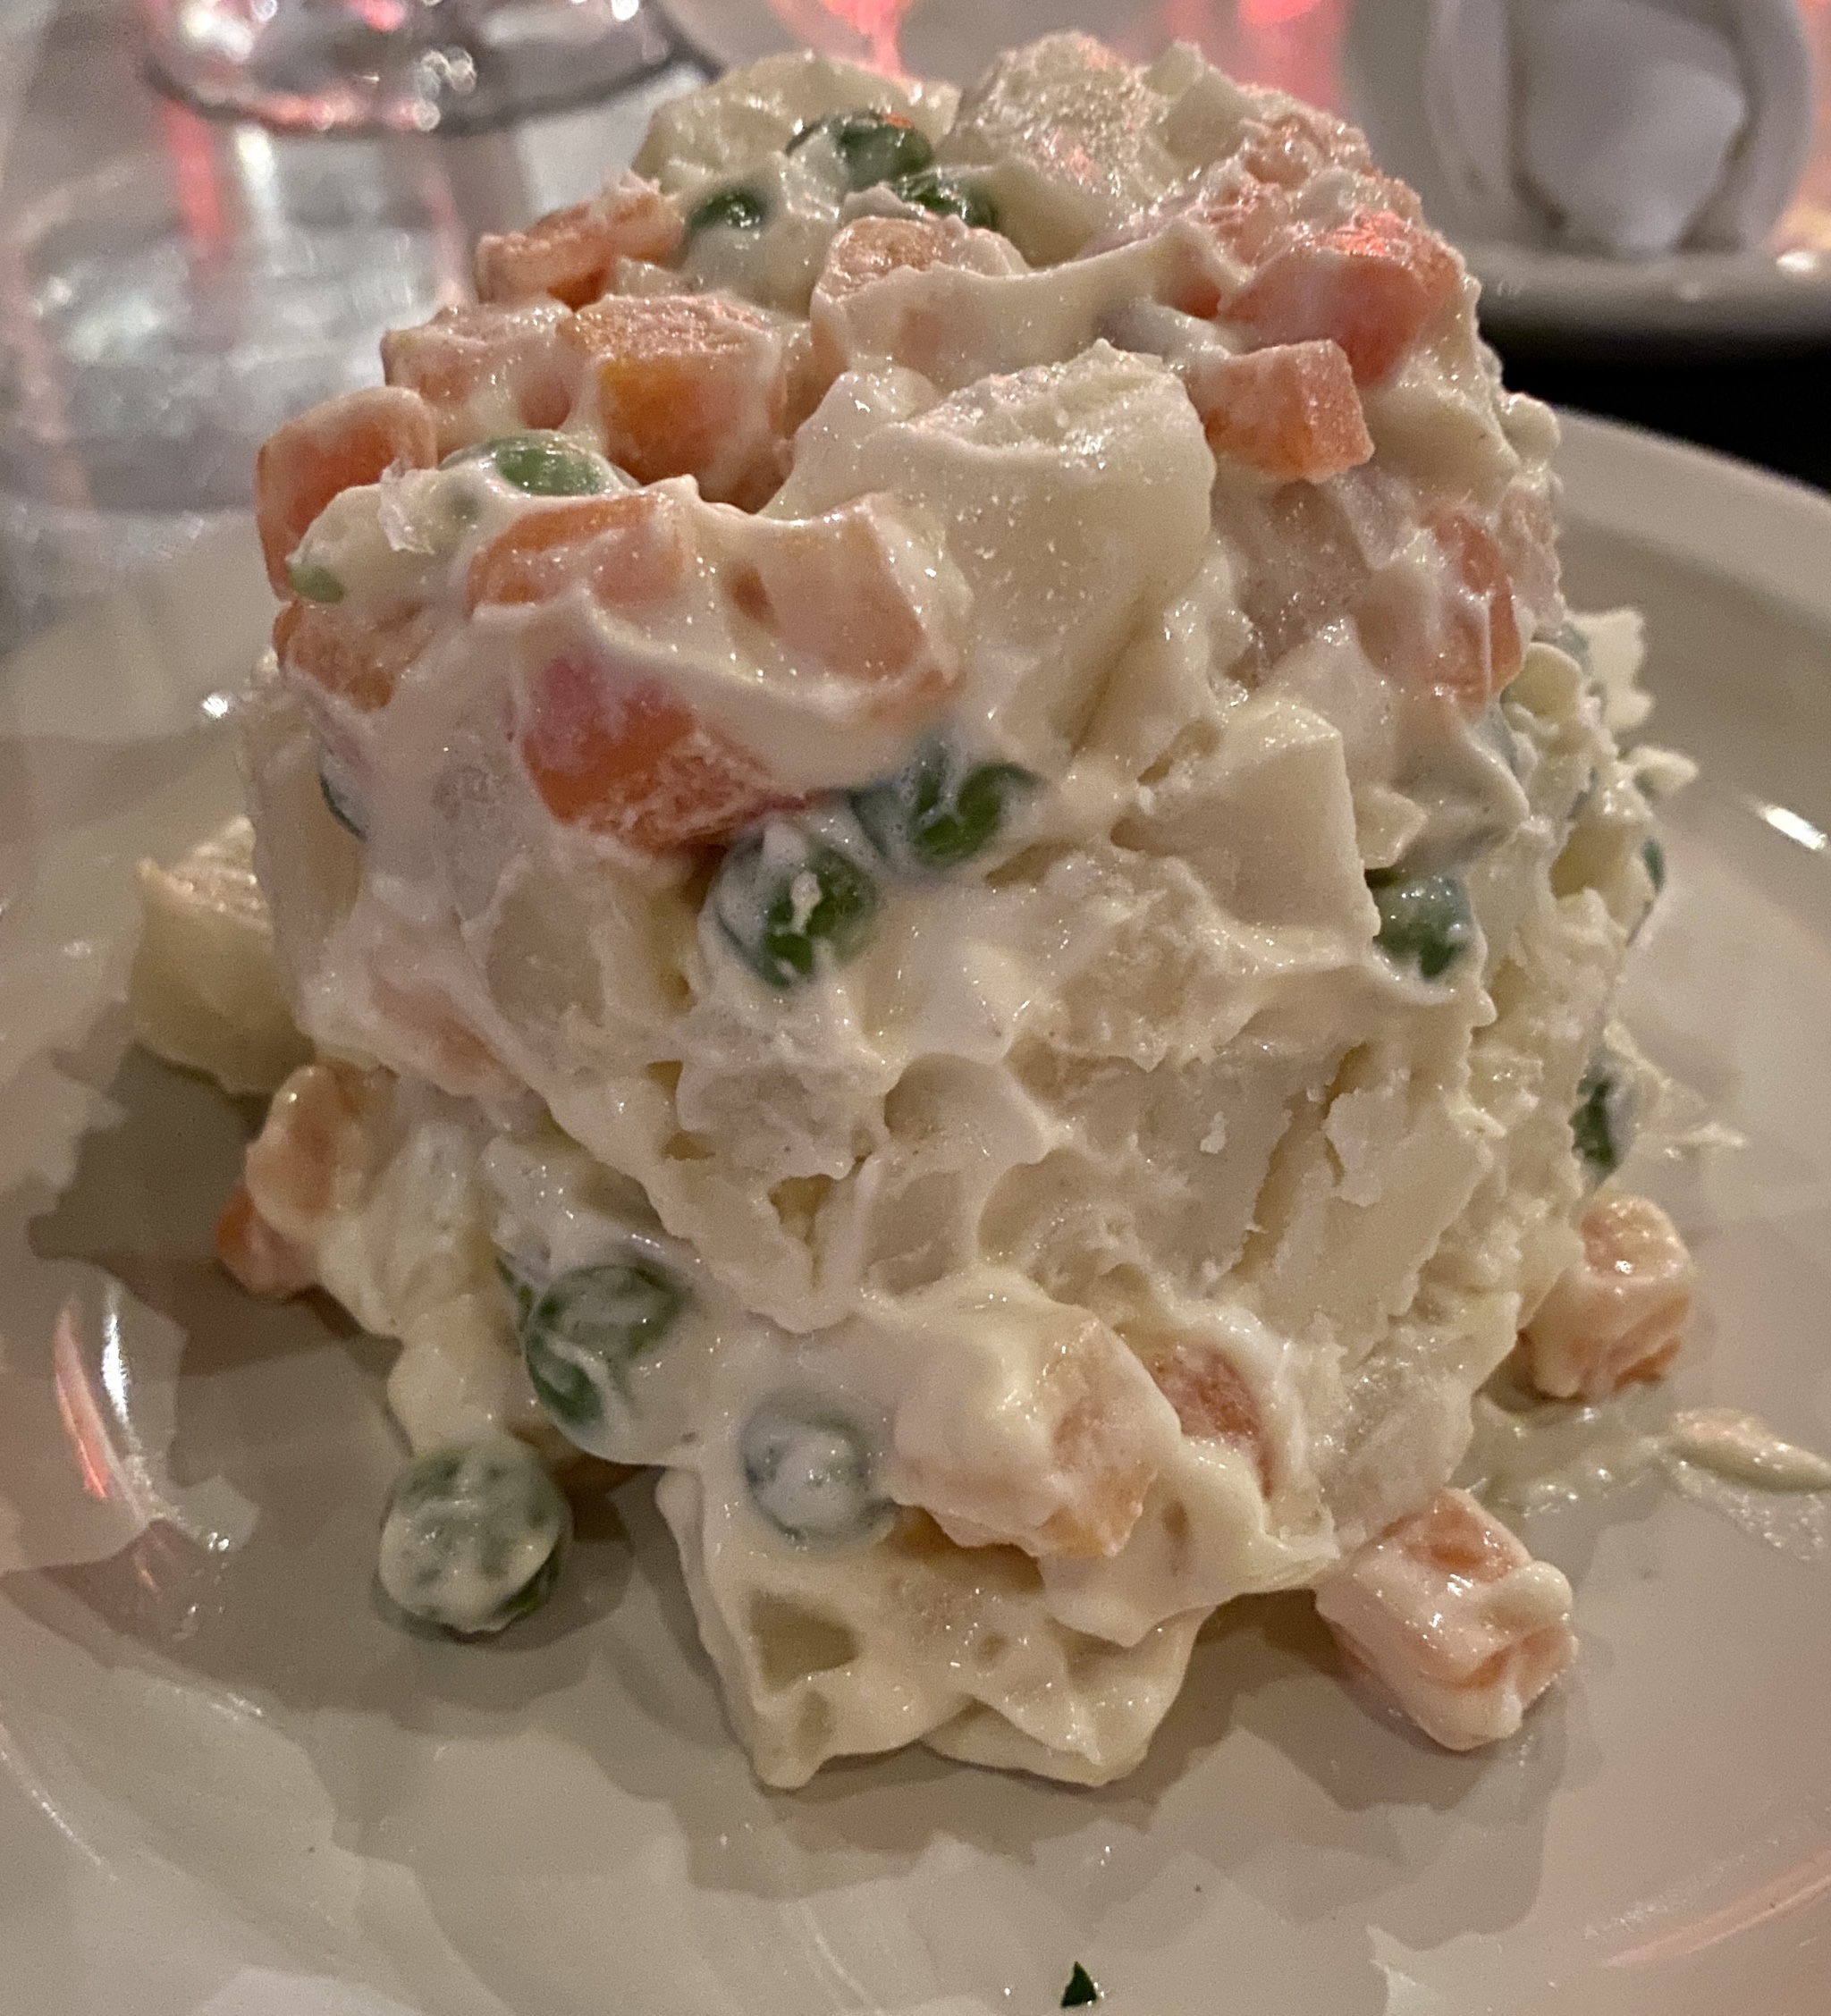 Renzo's Rusa Potato Salad